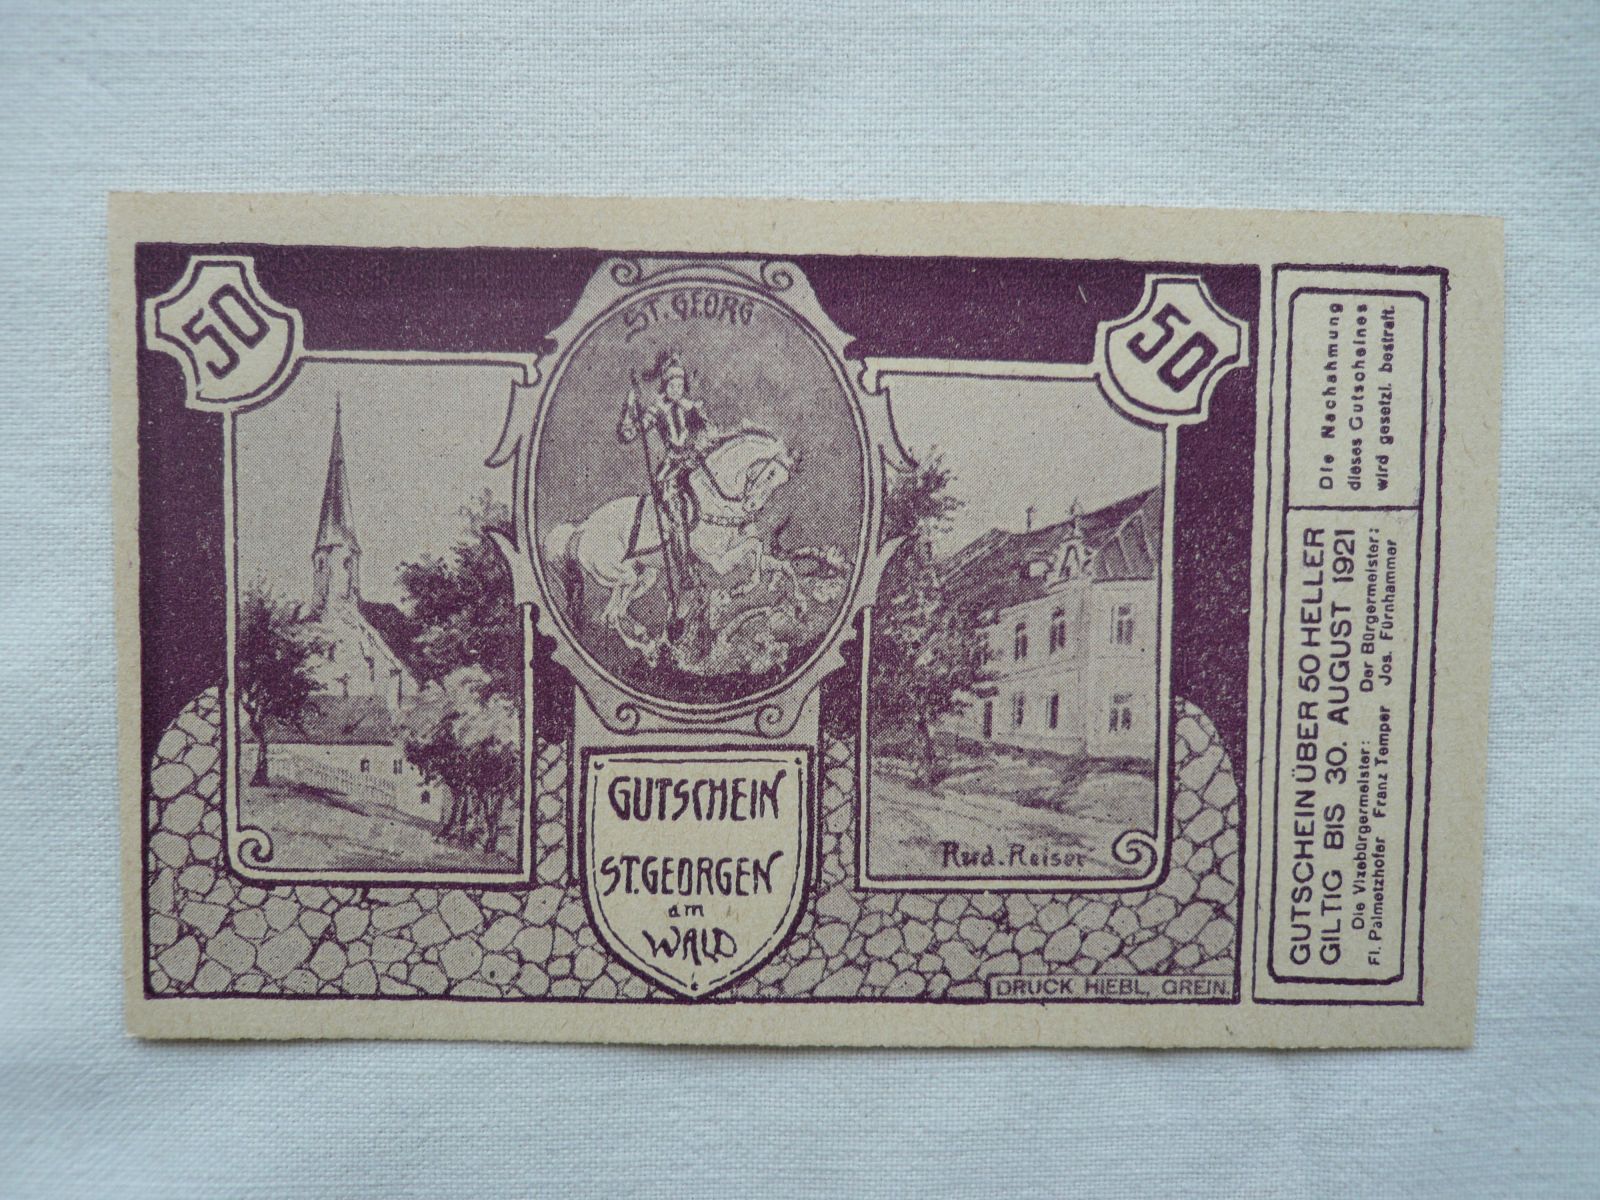 50 Heller, St.Georgen, 1921, Rakousko